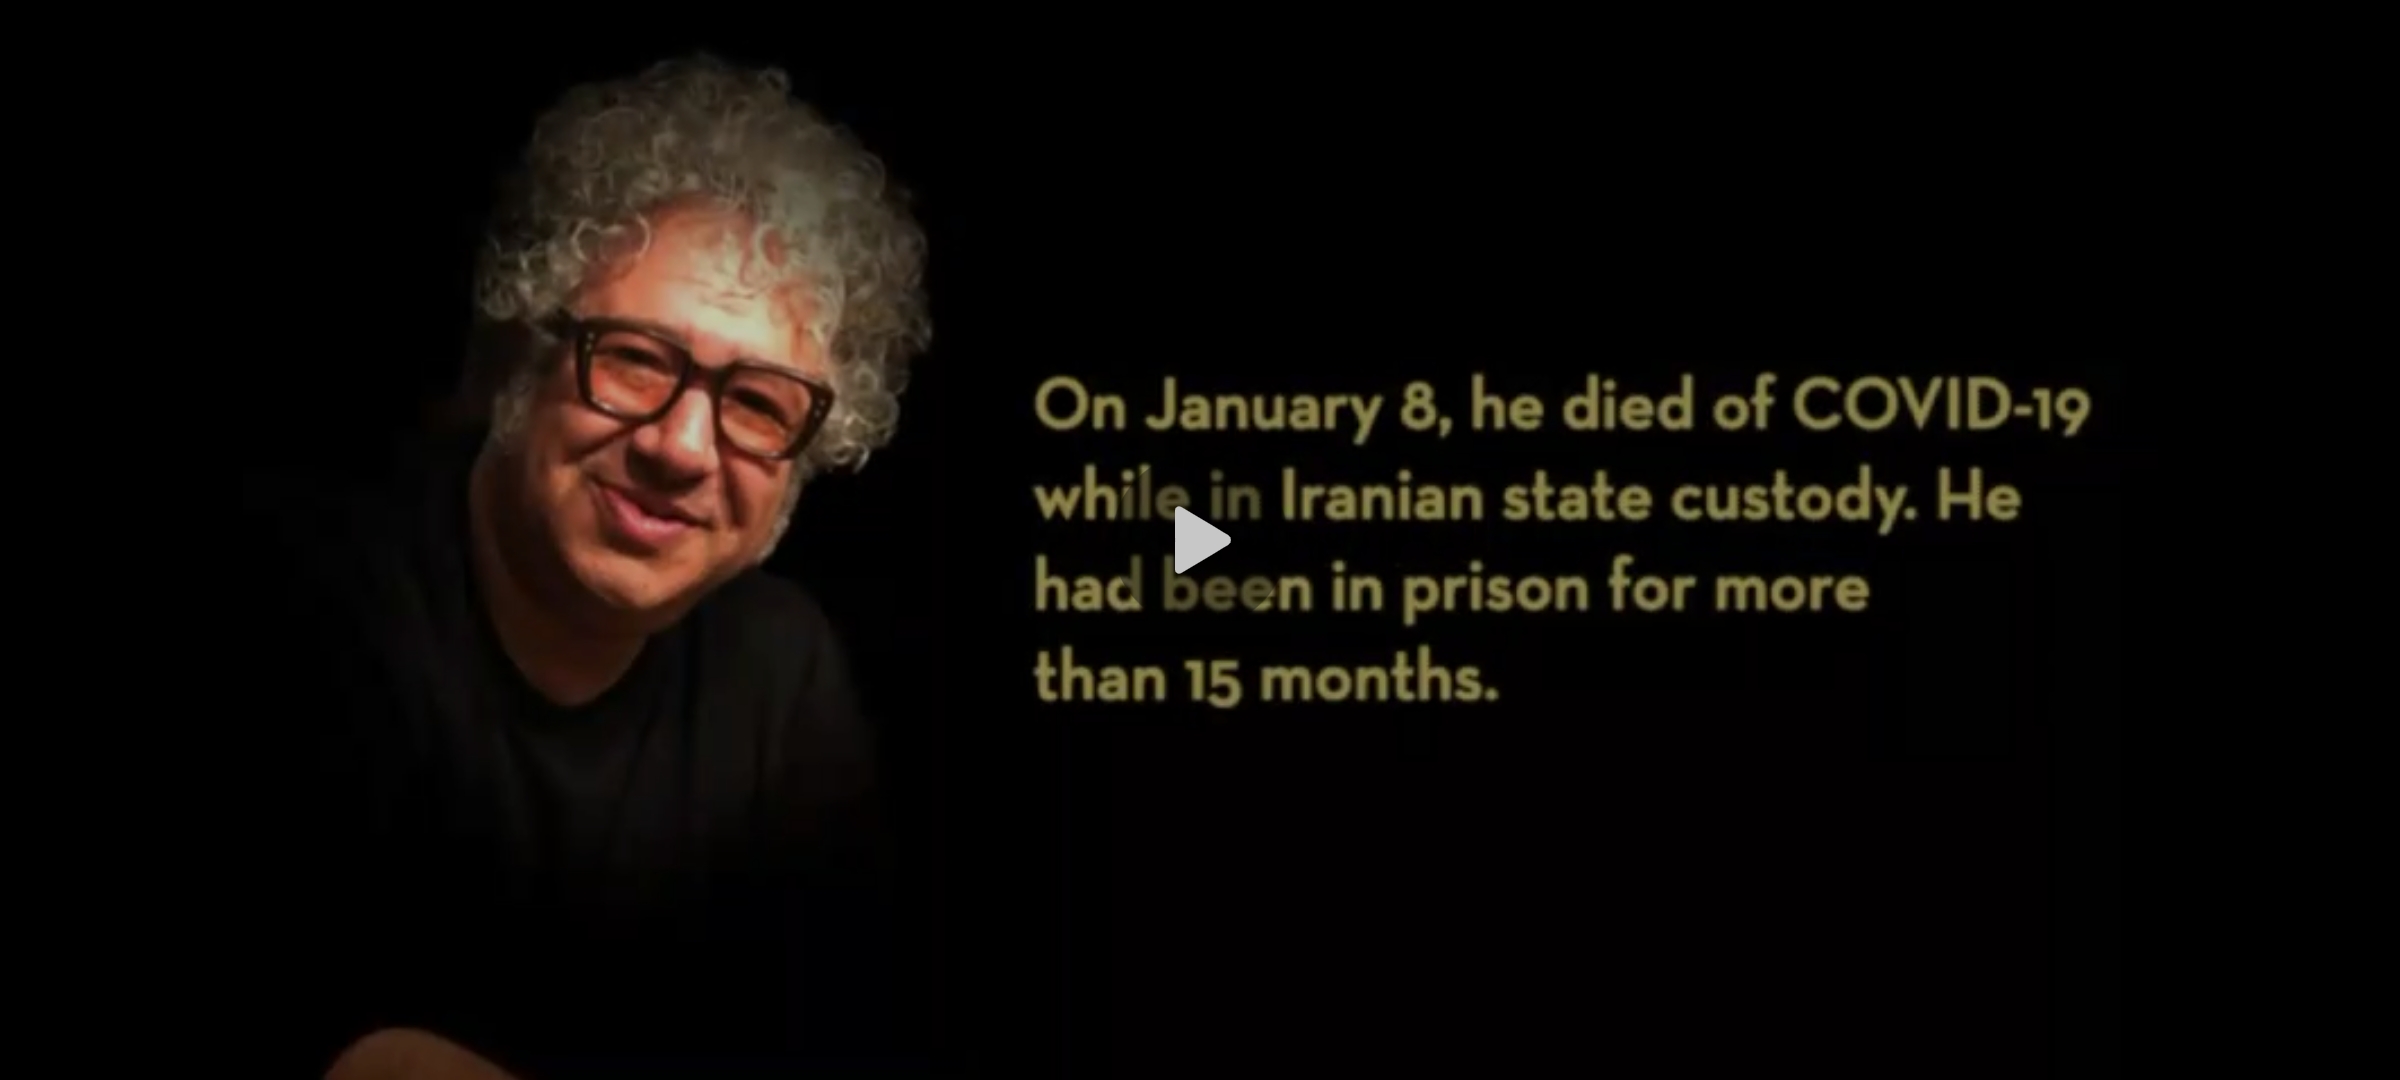 ویدئو و متن زیر یک هفته پس از قتل بکتاش آبتین در صفحات انجمن قلم (پن) آمریکا منتشر شد: